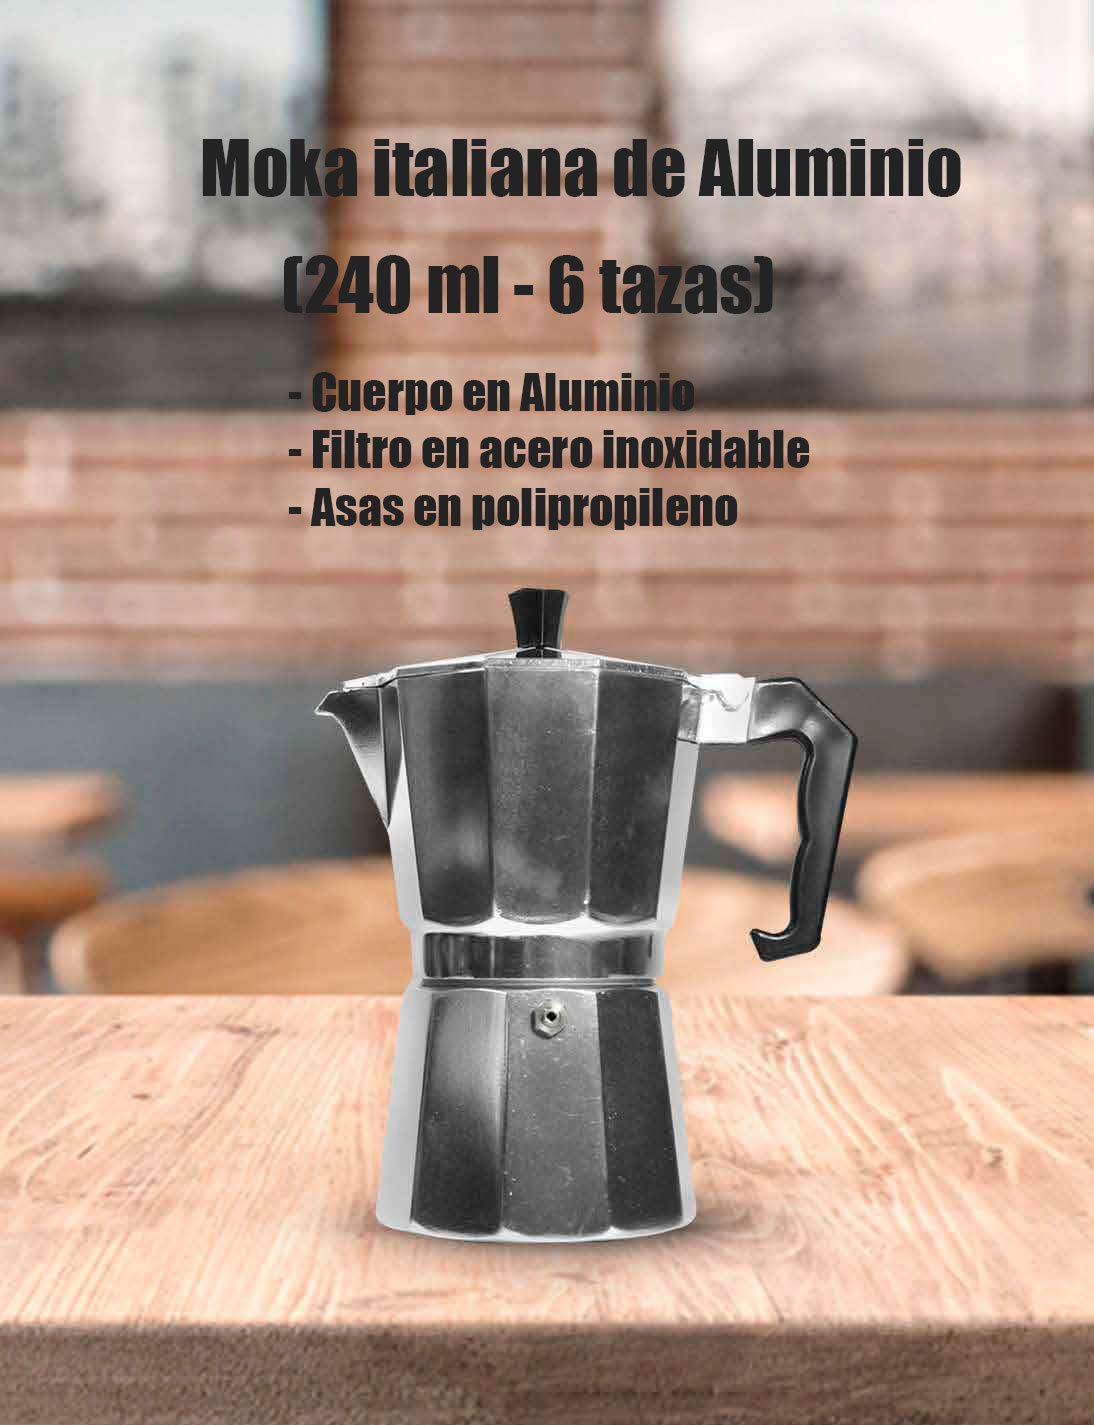 Cafetera Italiana con filtro de acero inoxidable